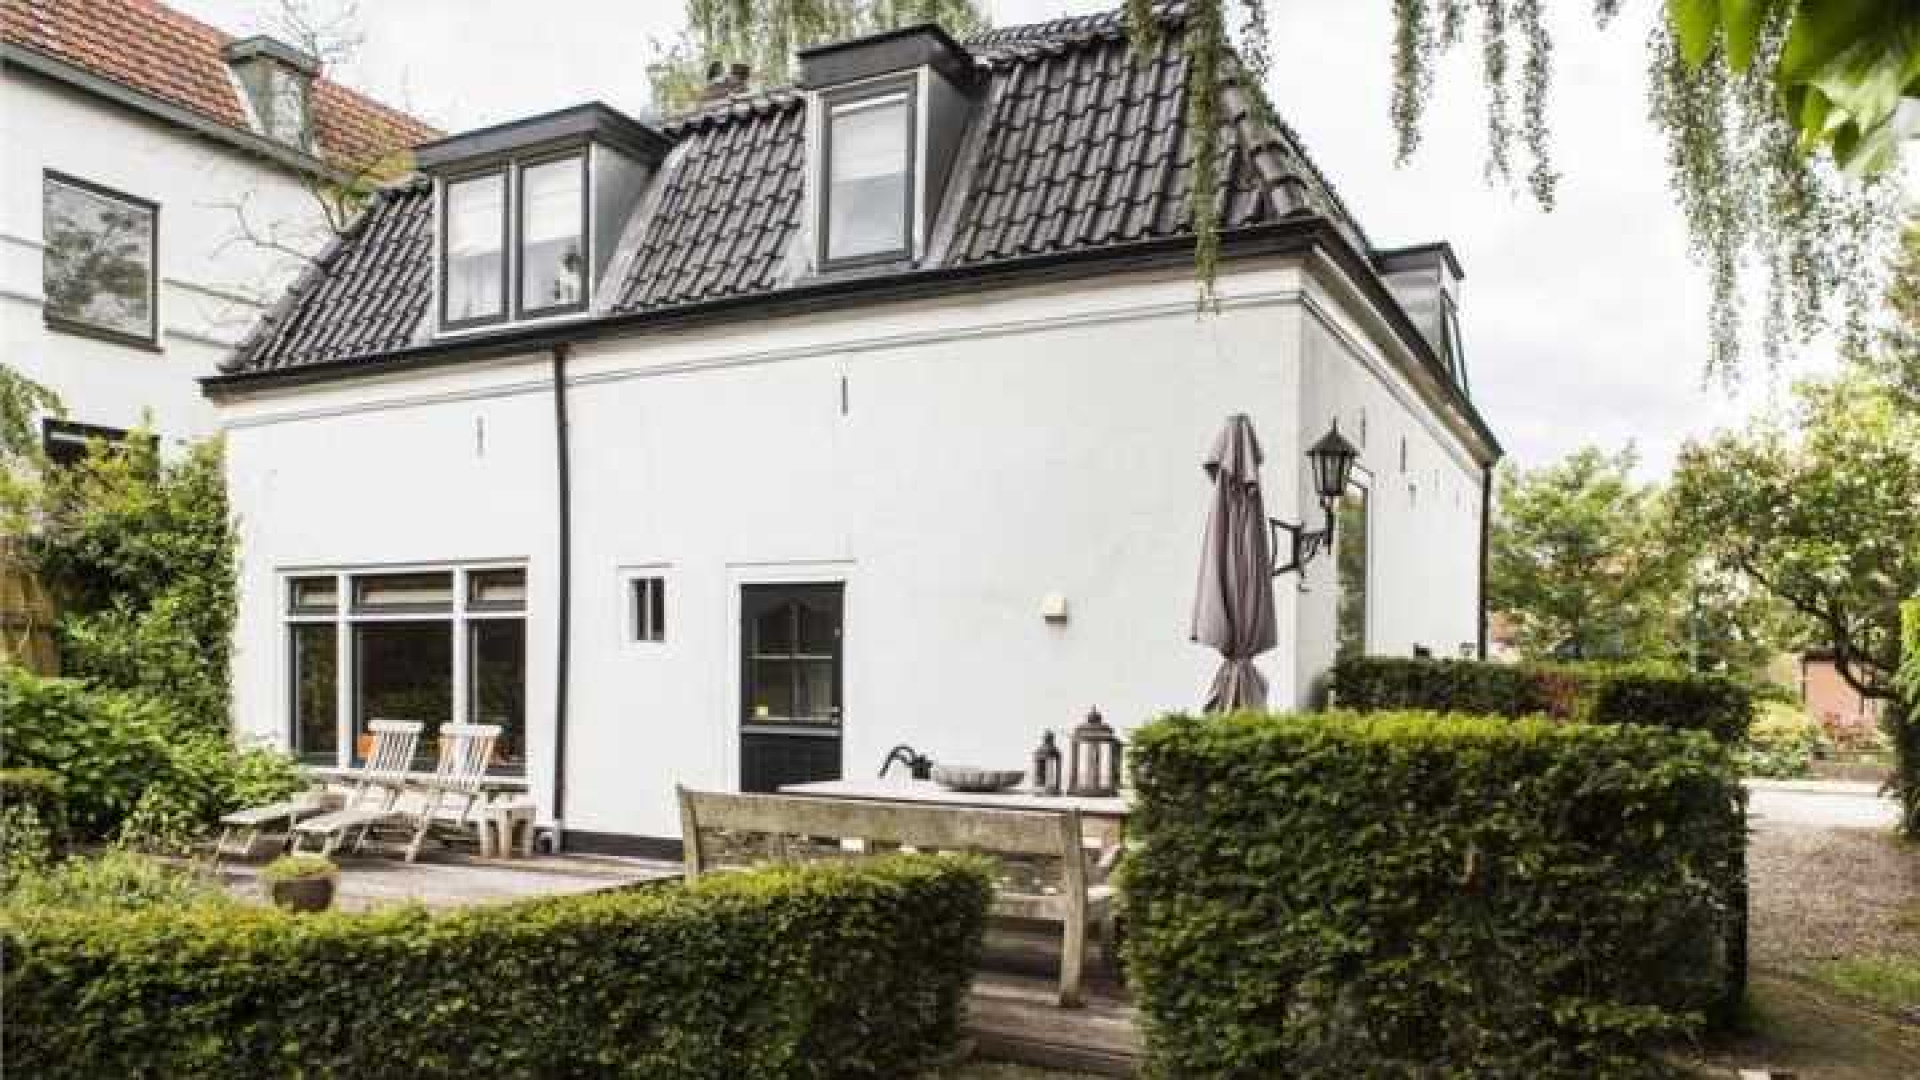 Mariska Hulscher haalt haar villa uit de verkoop. Zie foto's